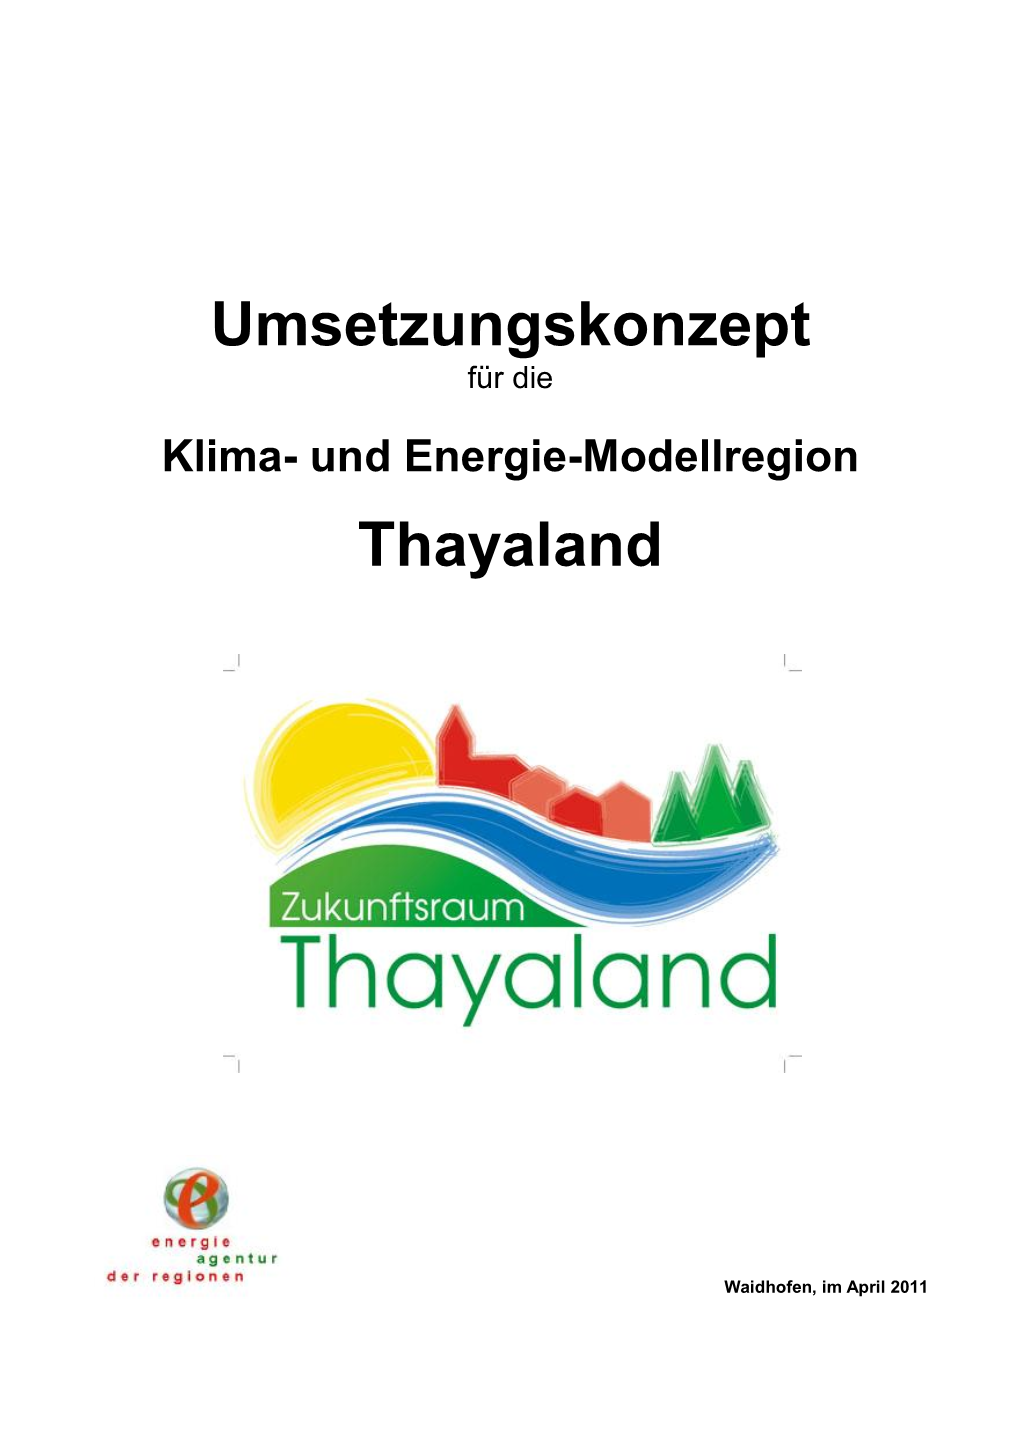 Umsetzungskonzept Thayaland